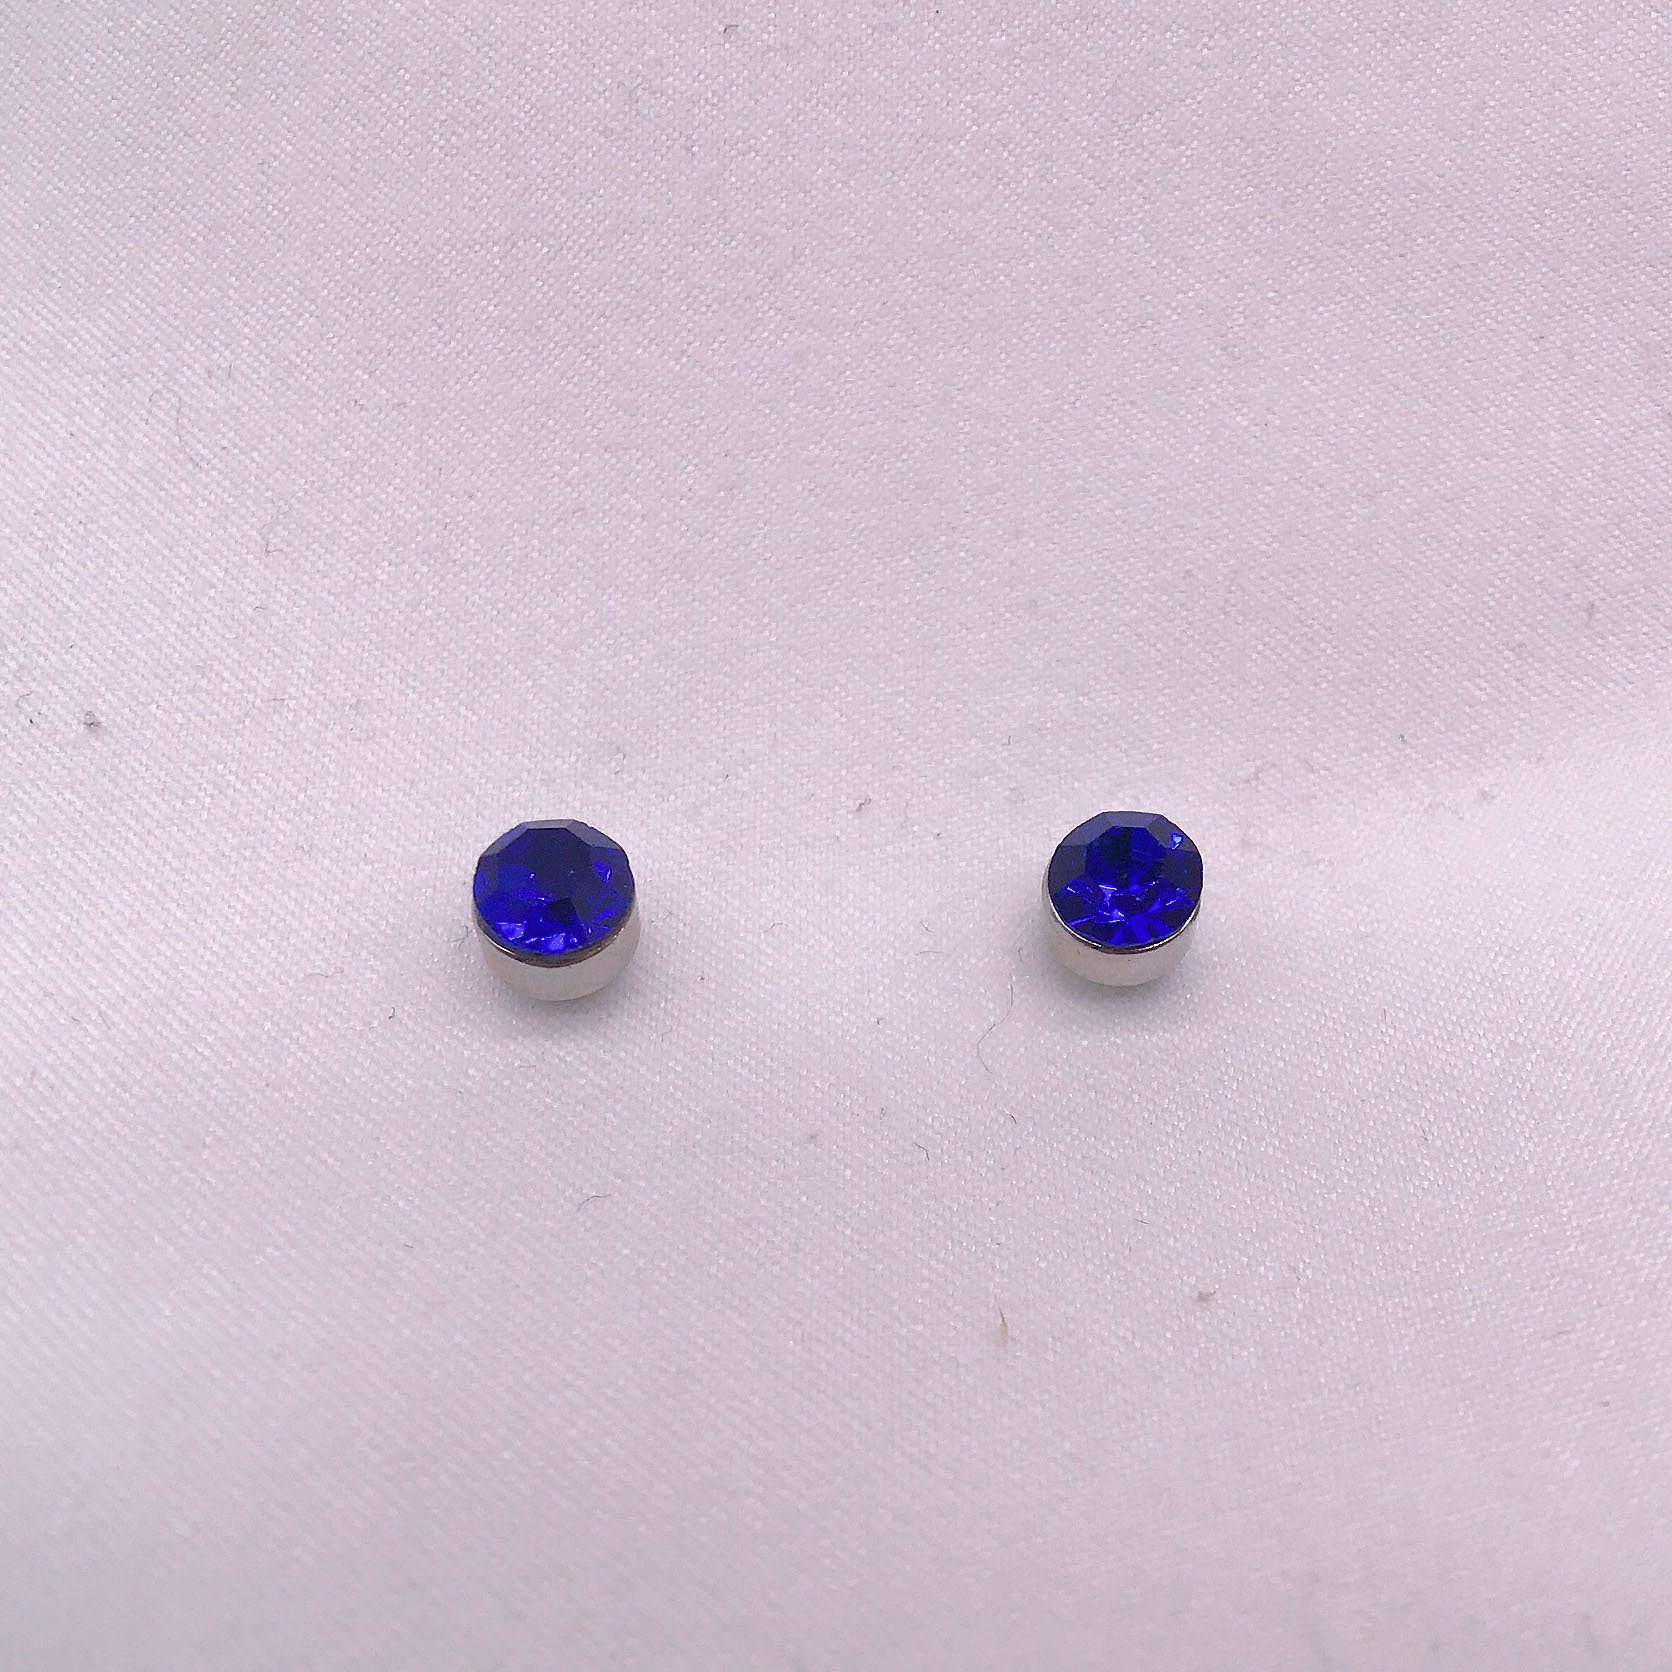 Gli orecchini di cristallo rotondi doppi di diamanti di cristallo non richiedono orecchini magnetici con fori le orecchie